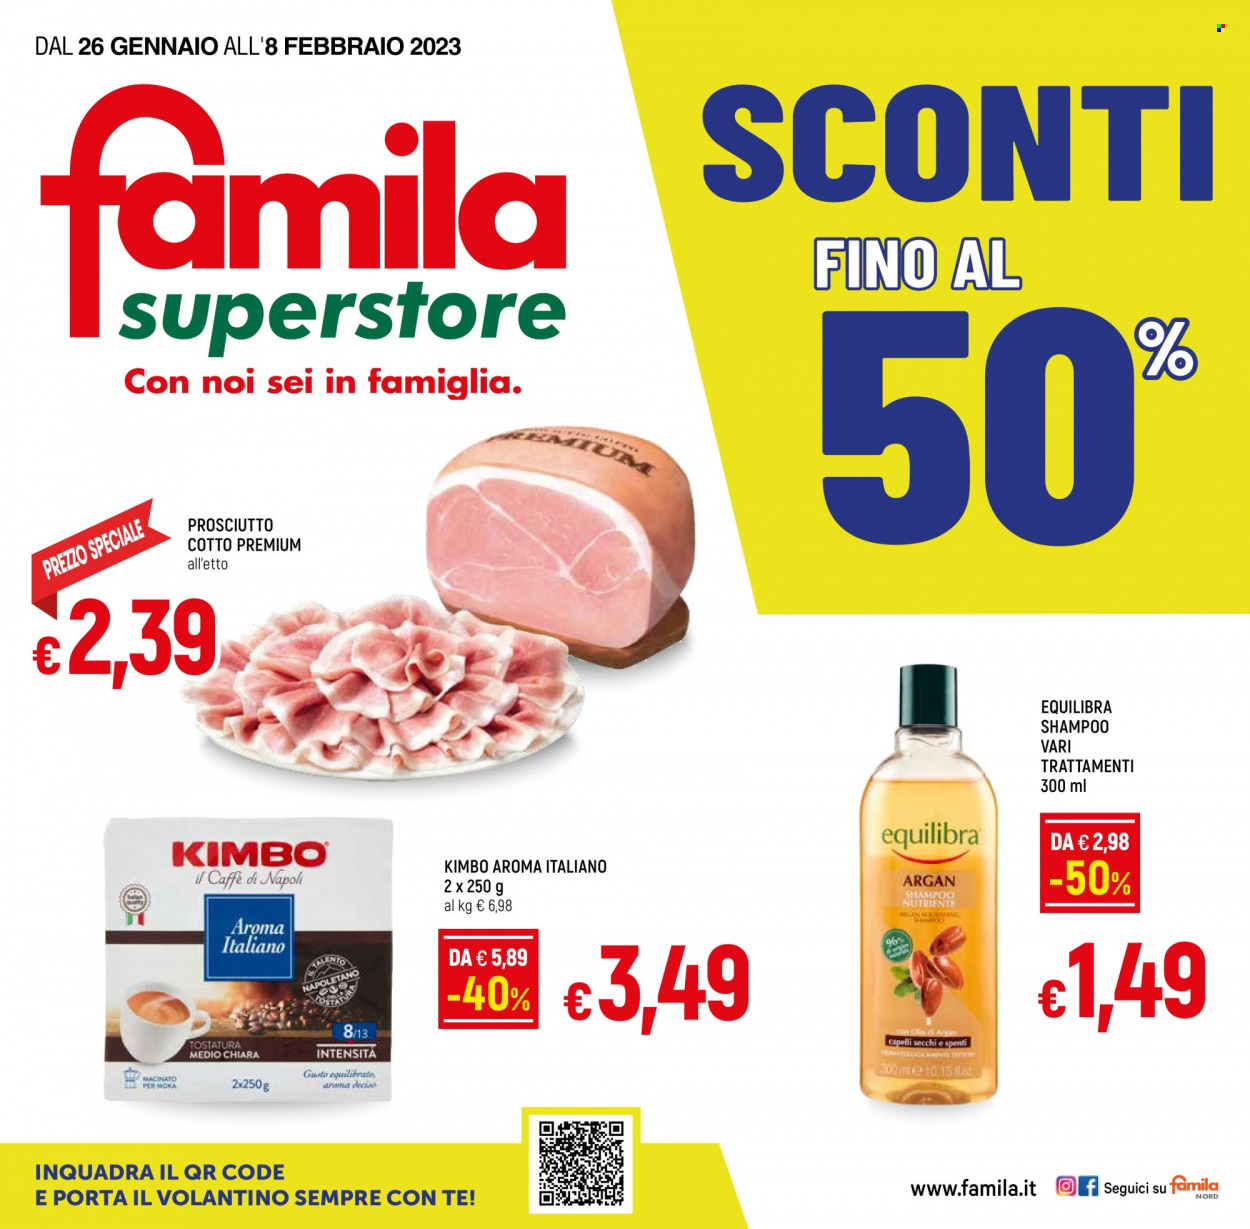 Volantino Famila - 26/1/2023 - 8/2/2023 - Prodotti in offerta - Equilibra, prosciutto, prosciutto cotto, Kimbo, shampoo, argan. Pagina 1.